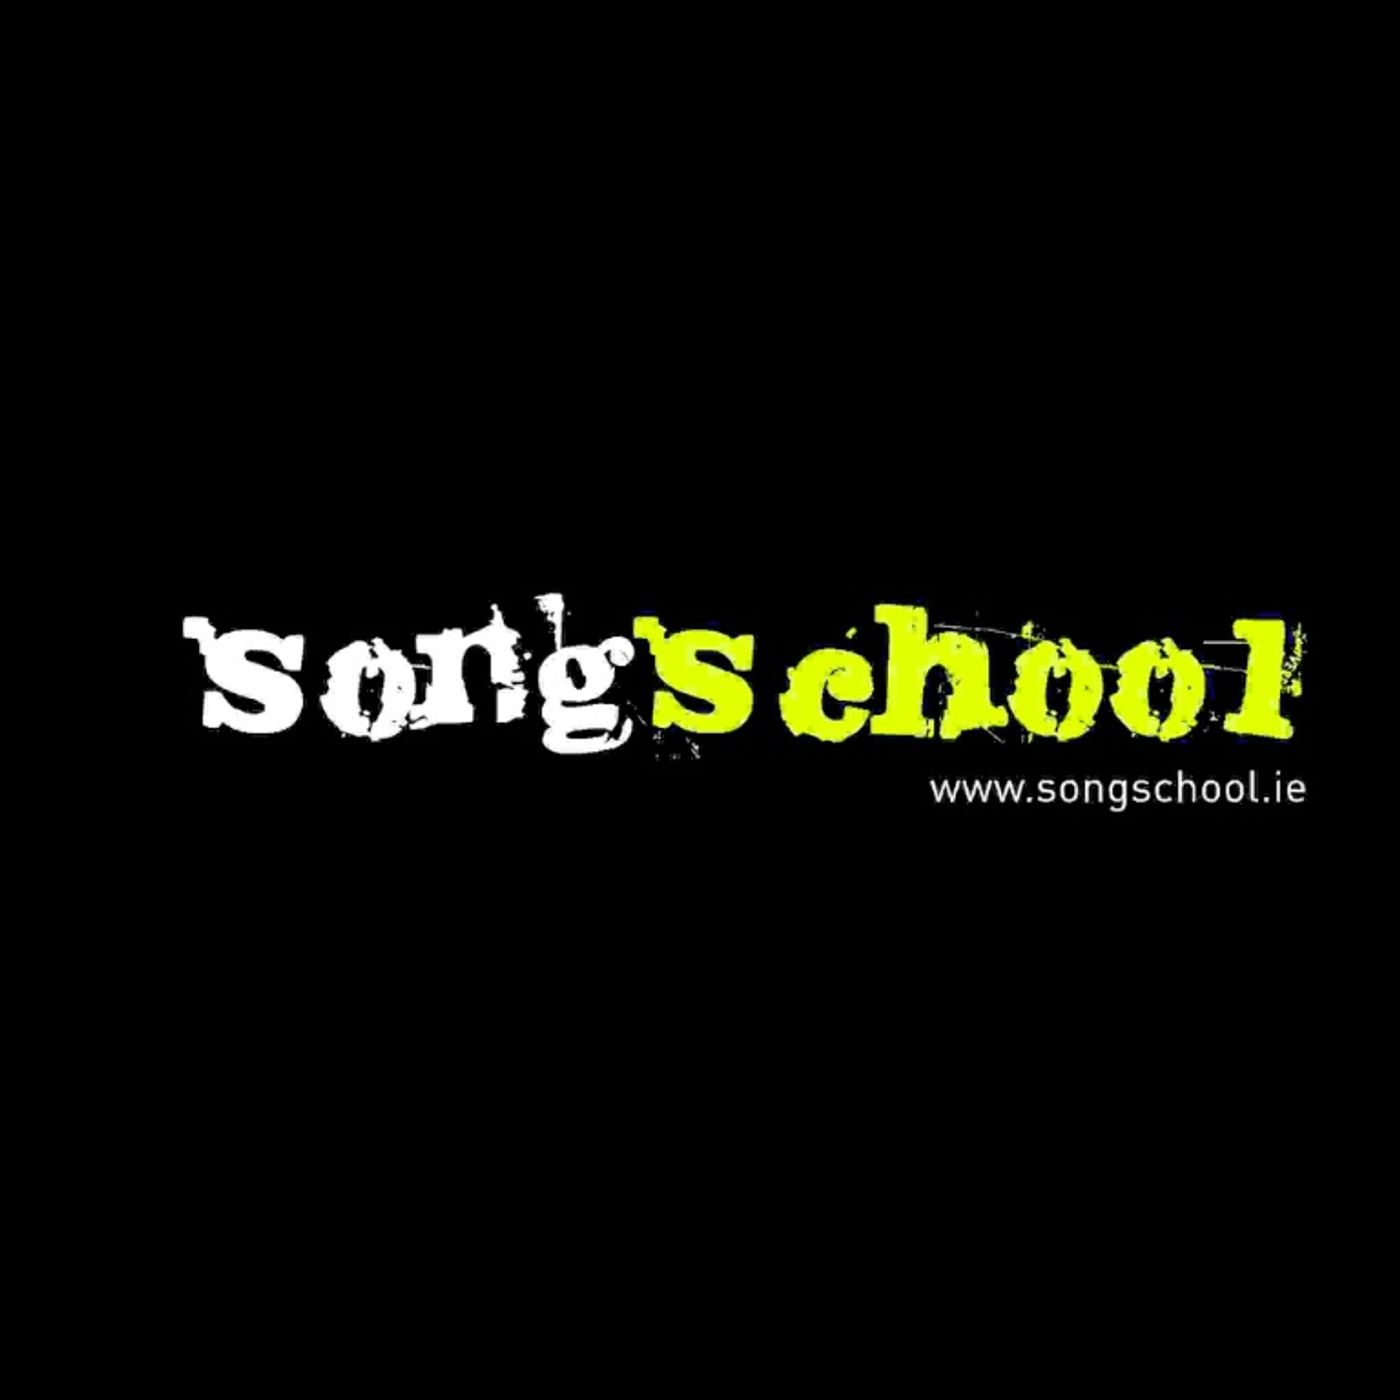 The Songschool Show @ Draíocht